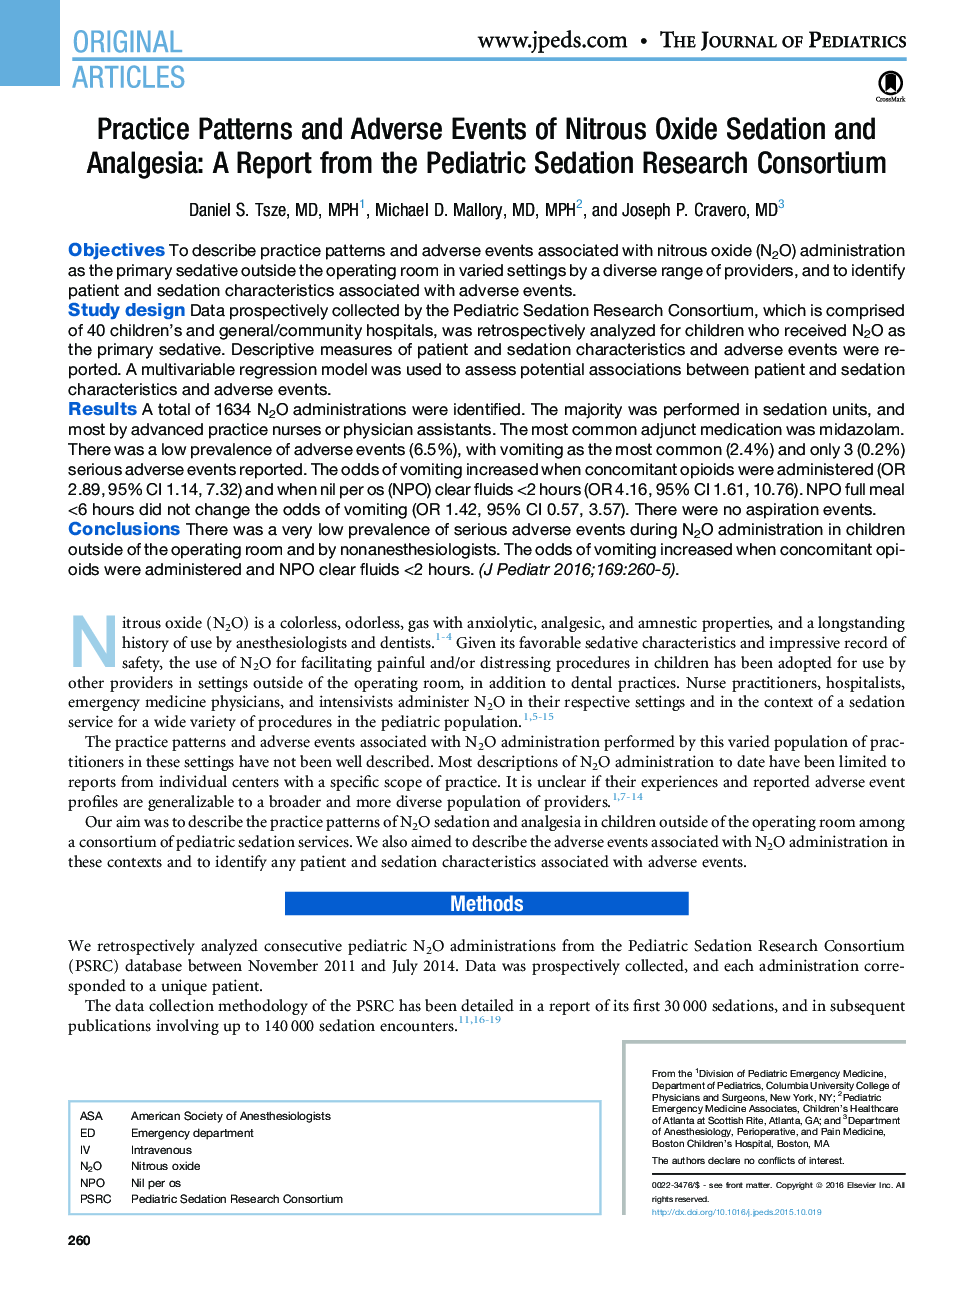 الگوی تمرین و رویدادهای متفاوتی از تنفس اکسید نیتروژن و ناشتا: یک گزارش از کنسرسیوم تحقیقاتی اطفال 